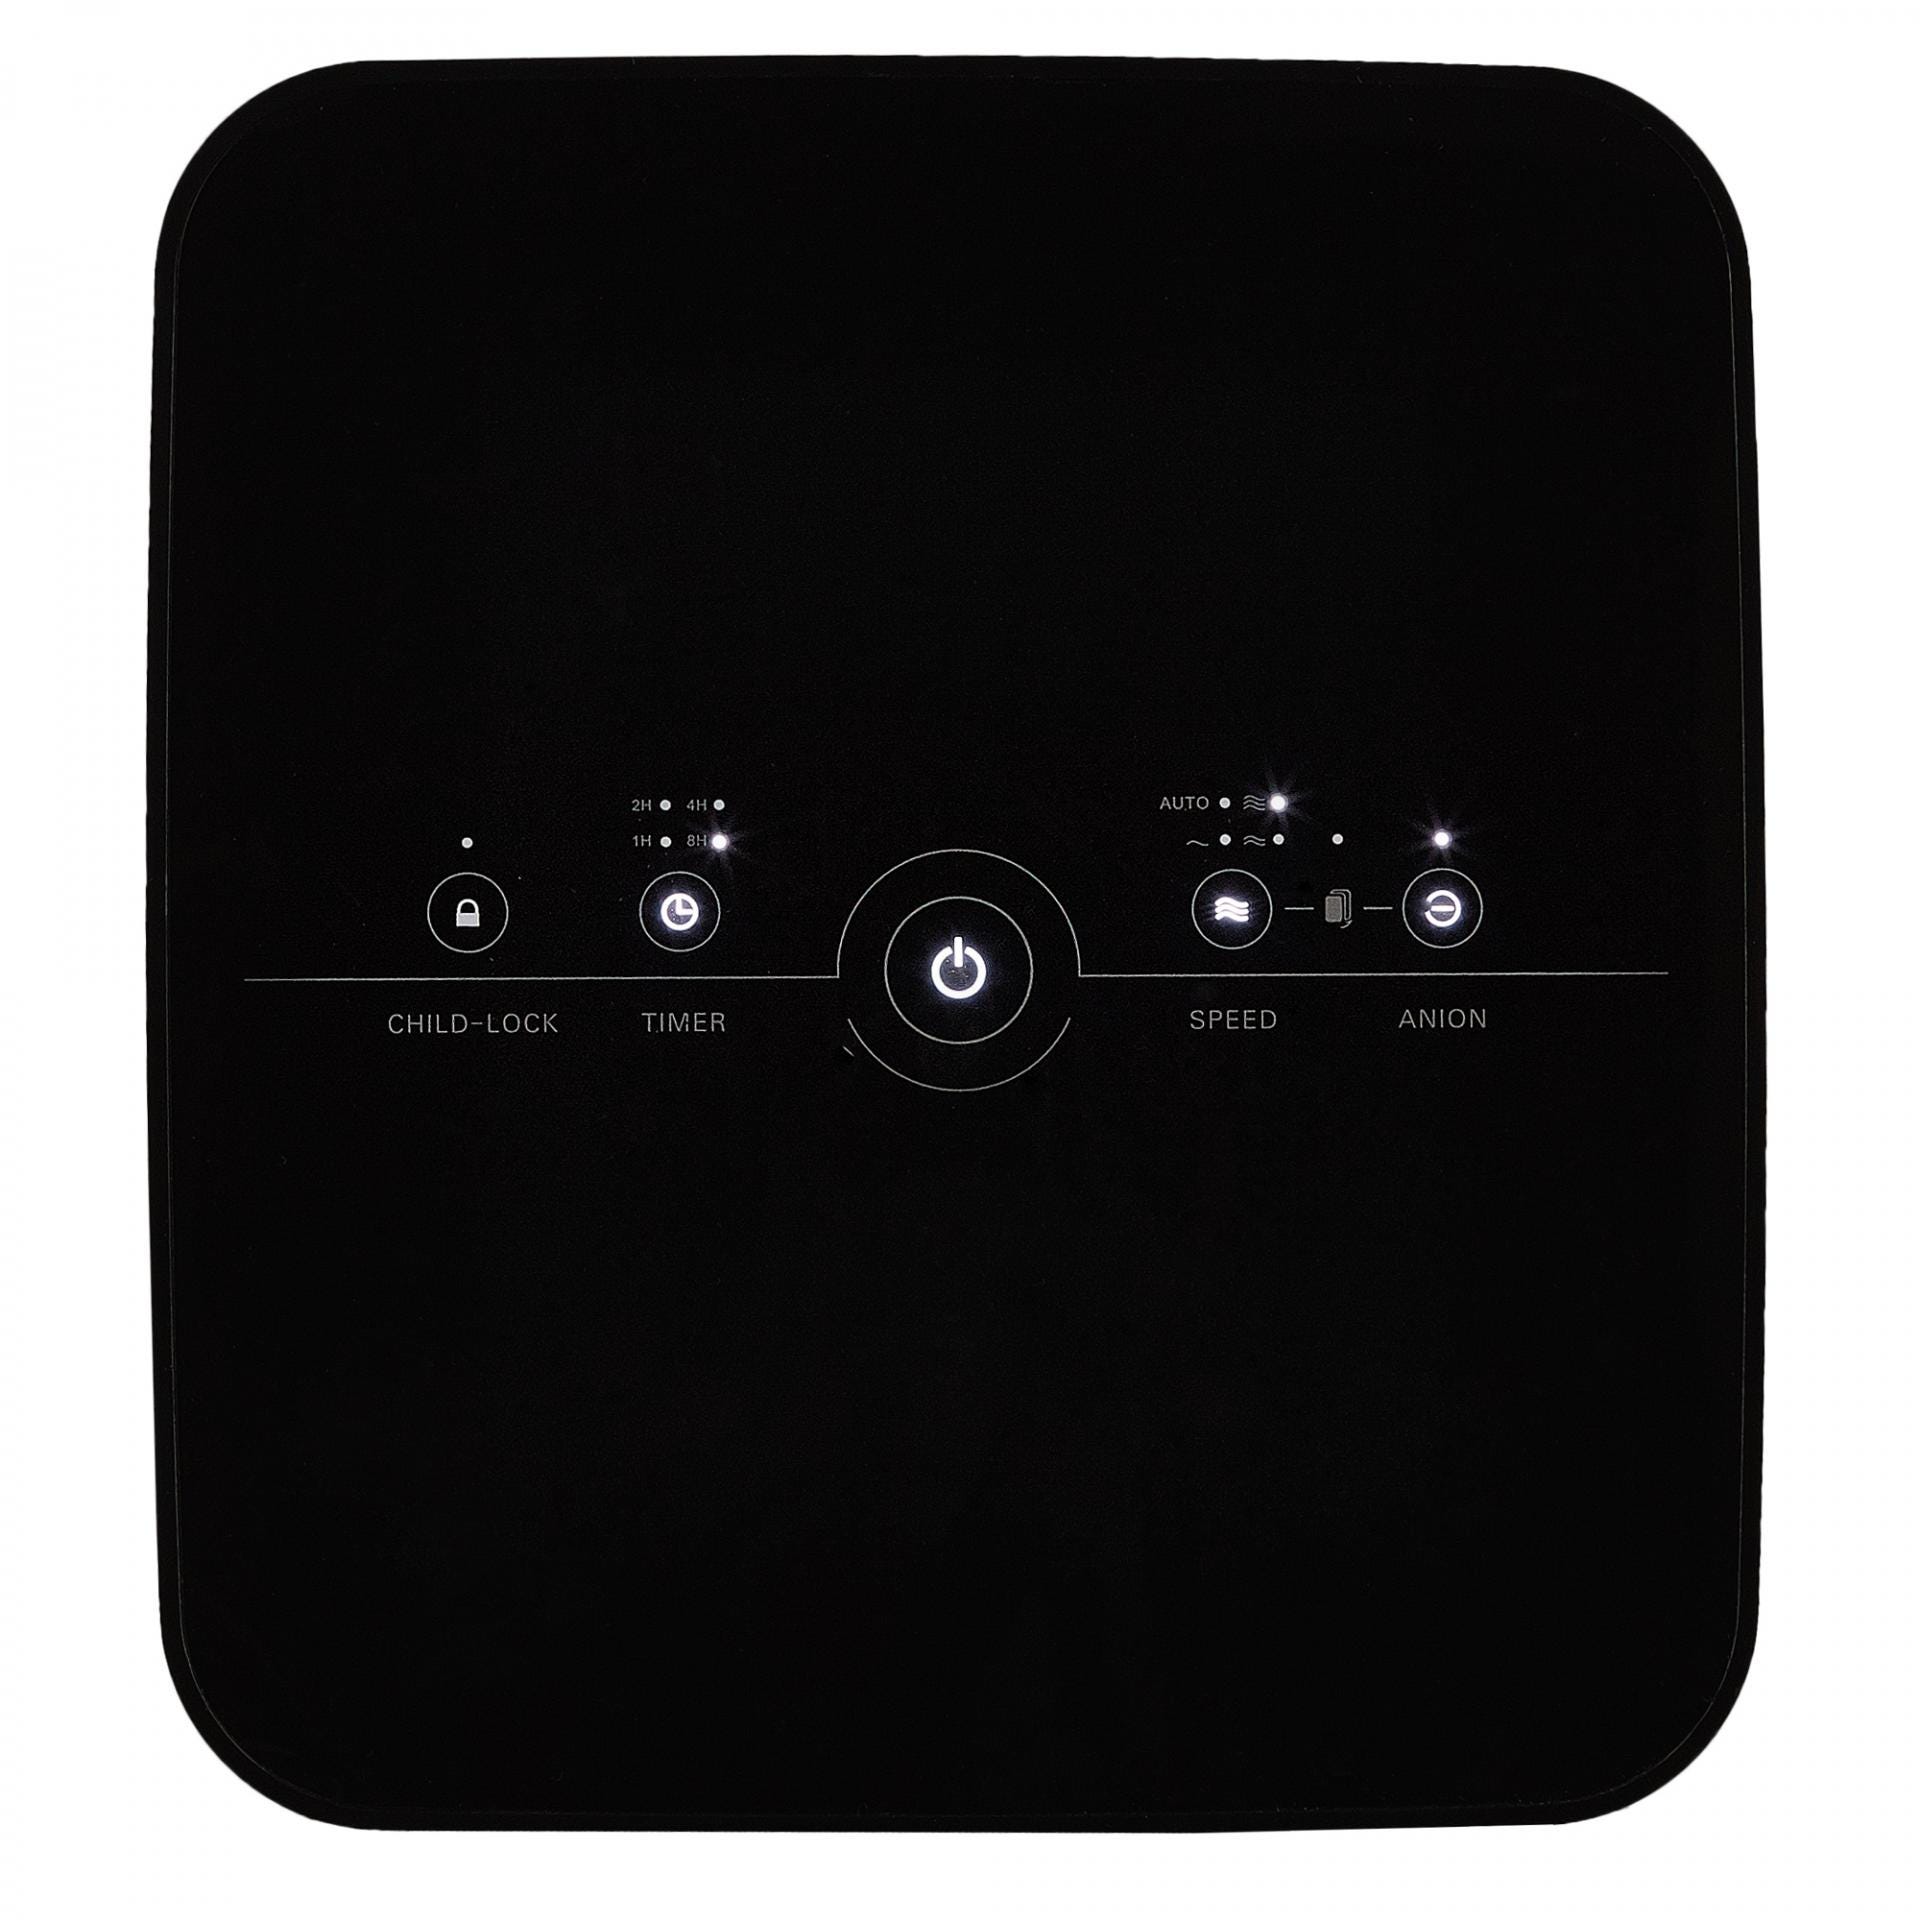 Purificator de aer Samus Clean Air WiFi, 330 mc/h, touch control, 52 W, suprafata 40 mp, senzor praf/fum